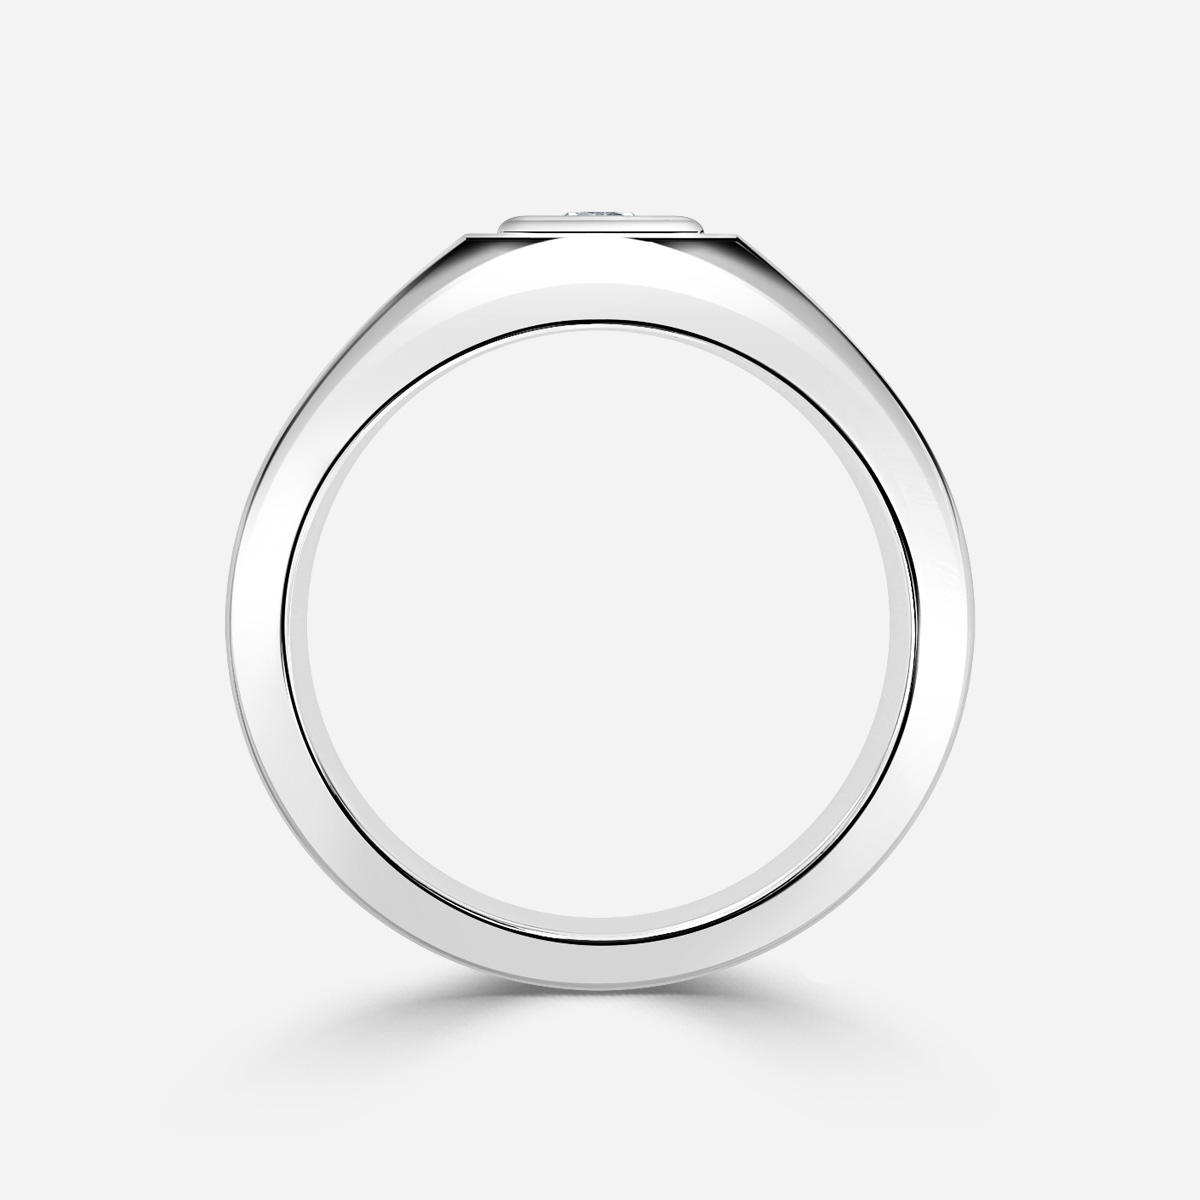 George Platinum Men's Engagement Ring